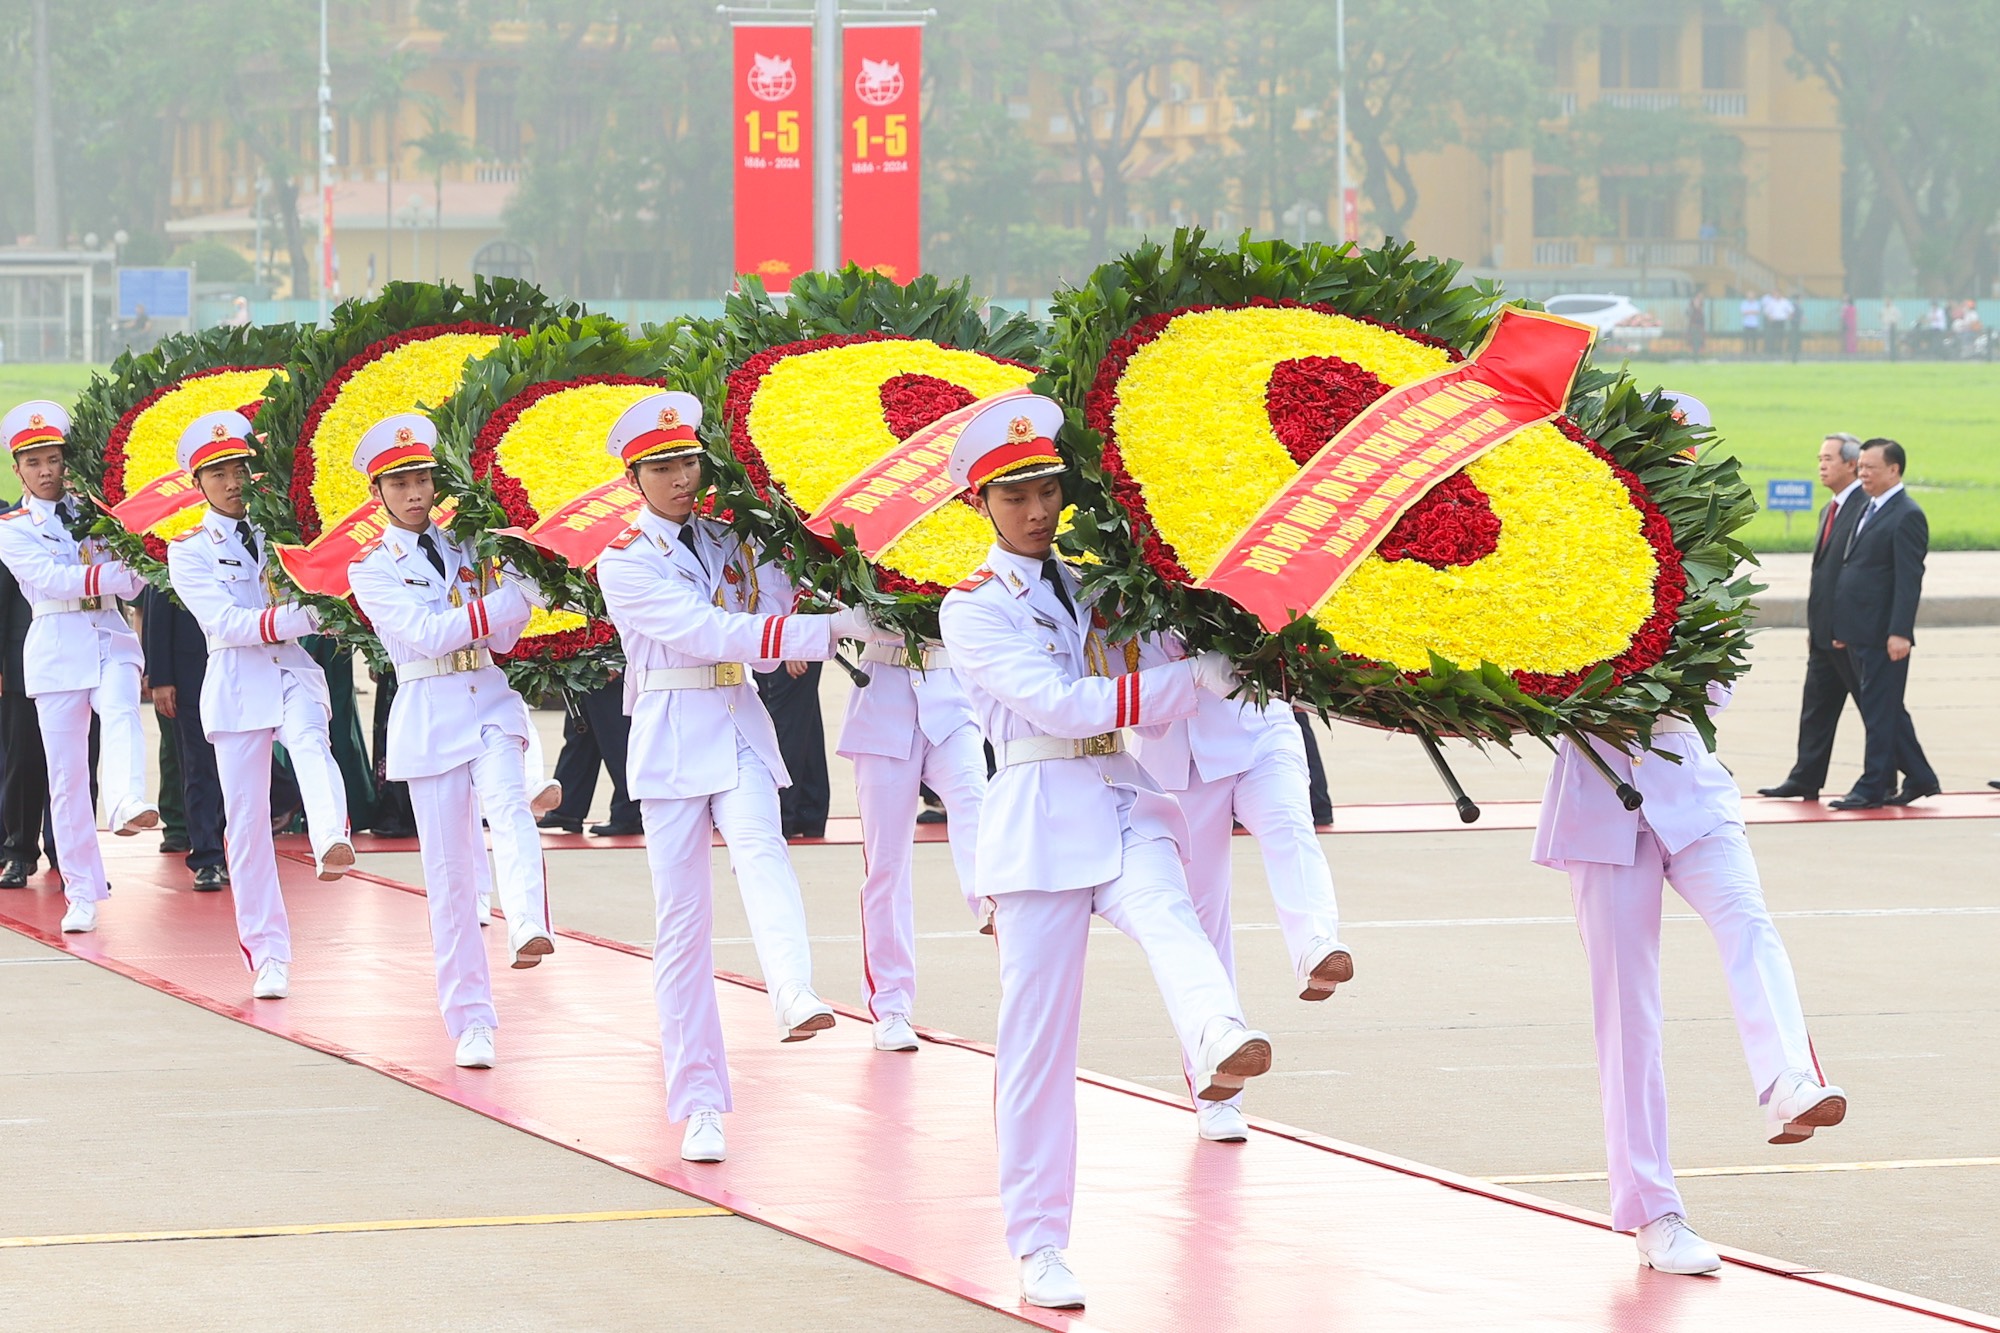 Vòng hoa của đoàn mang dòng chữ: Đời đời nhớ ơn Chủ tịch Hồ Chí Minh vĩ đại